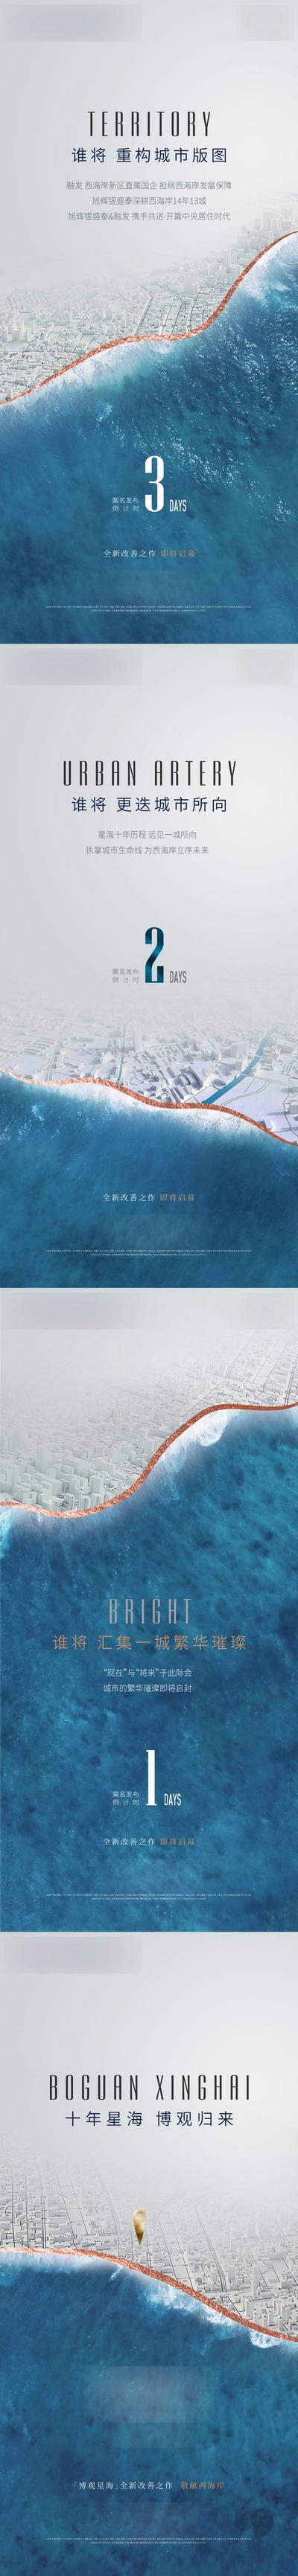 南门网 广告 海报 地产 倒计时 单图 土拍 拿地 地图 水 系列